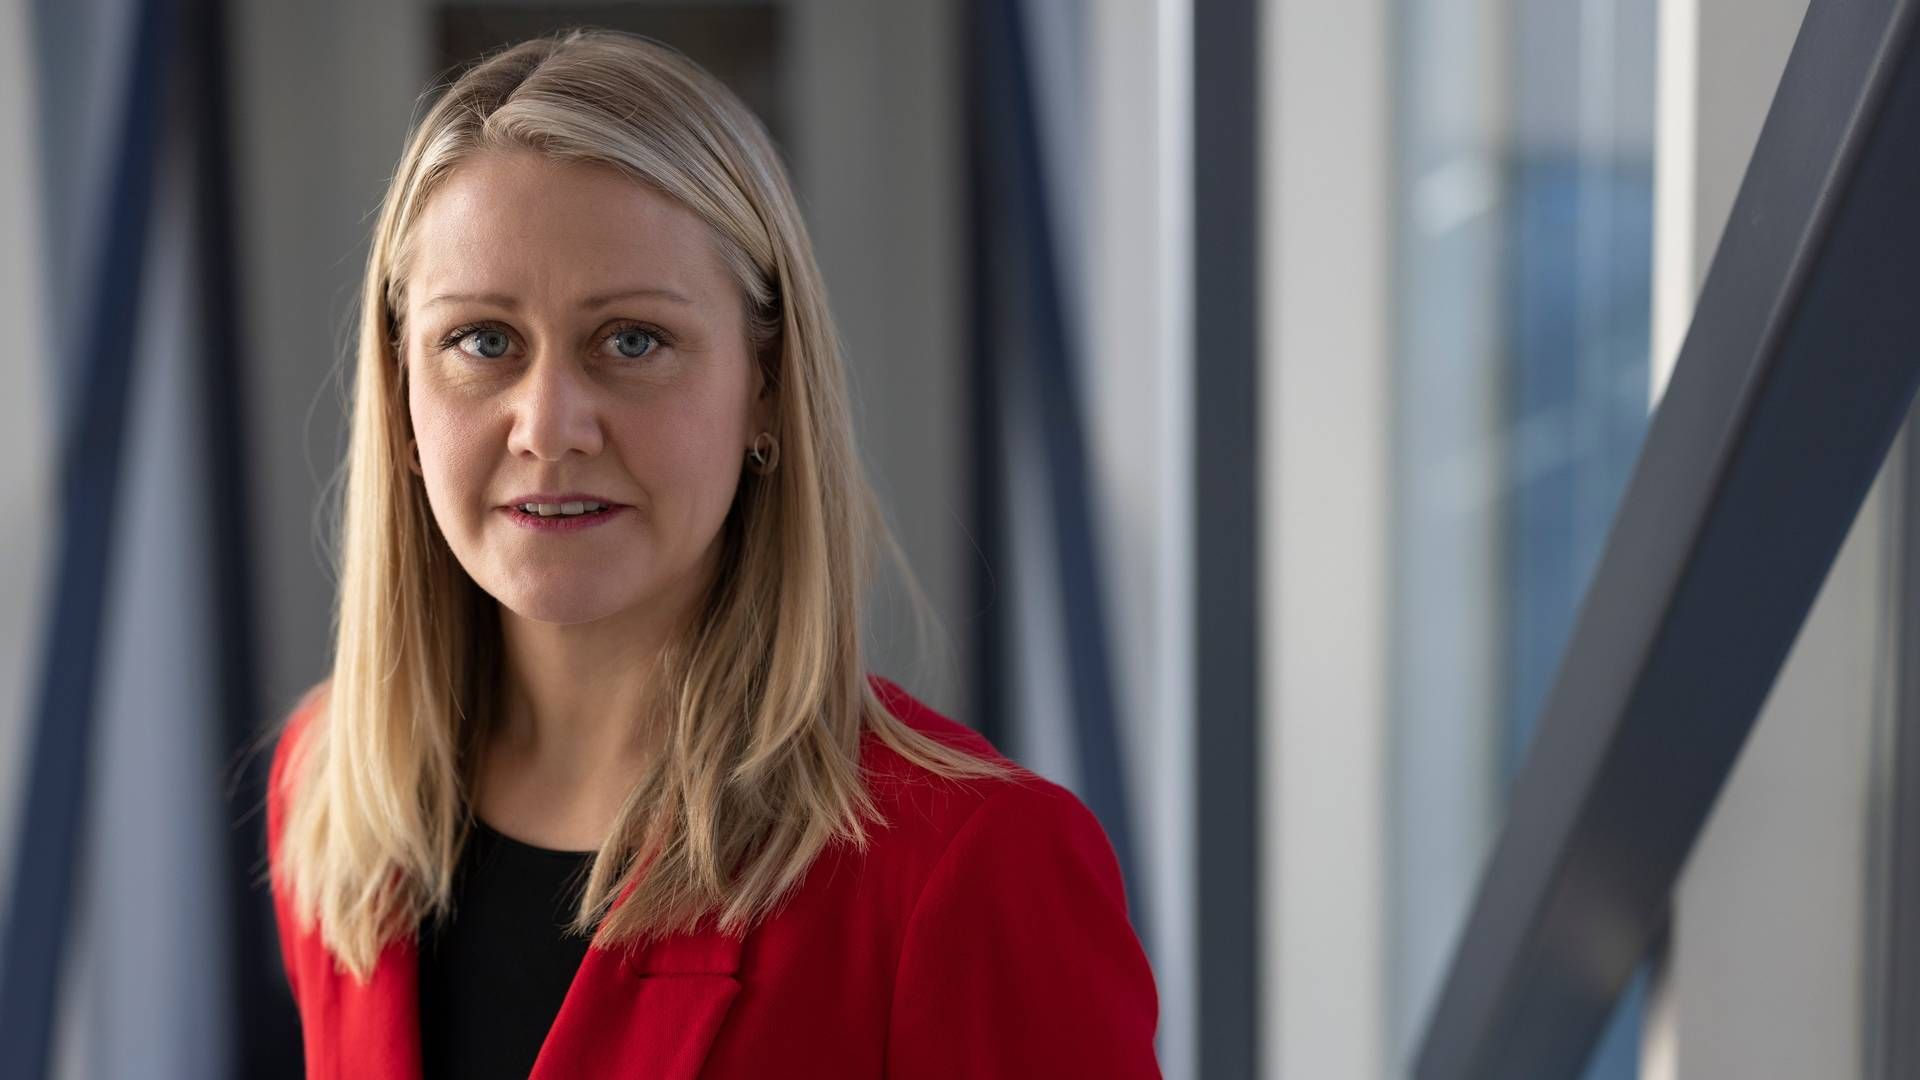 NY STATSSEKRETÆR: Astrid Bergmål er ny statssekretær i olje- og energidepartementet. | Foto: Rune Kongsro, Justis- og beredskapsdepartementet